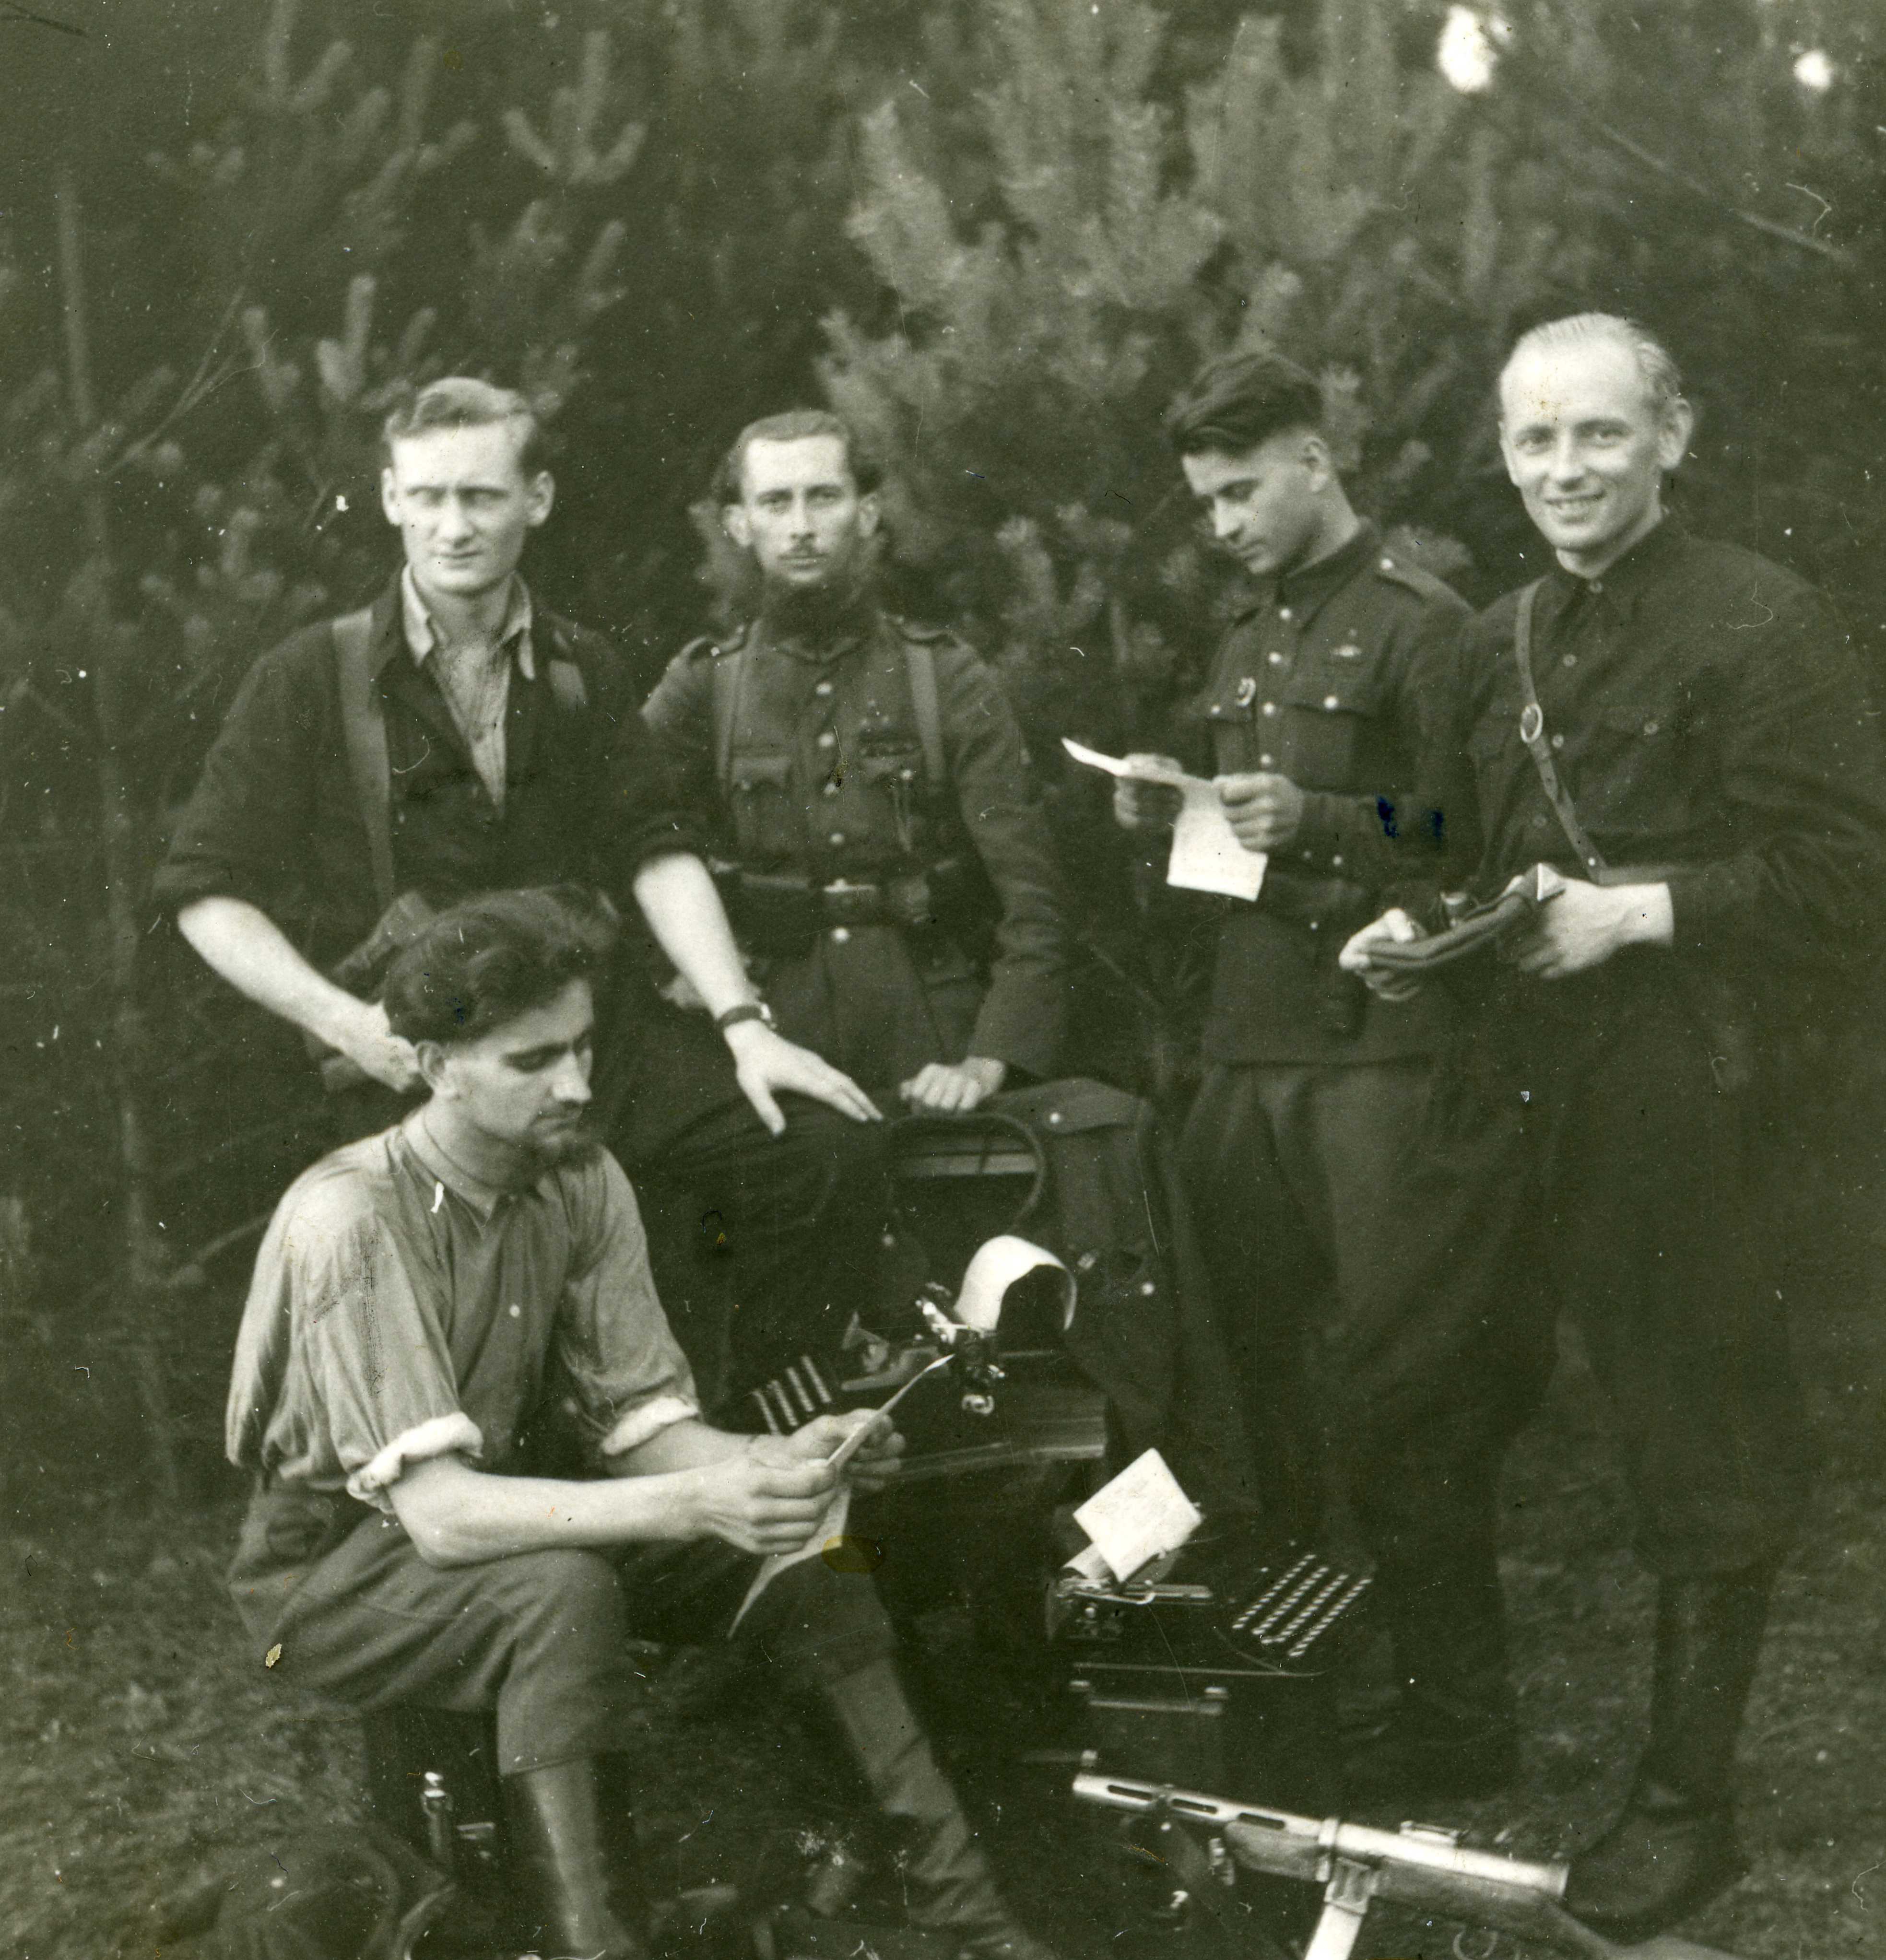 Dainavos apygardos partizanų štabo spaustuvė. 1948 m. Stovi Dainavos apygardos vadas Adolfas Ramanauskas Vanagas dešinėje1